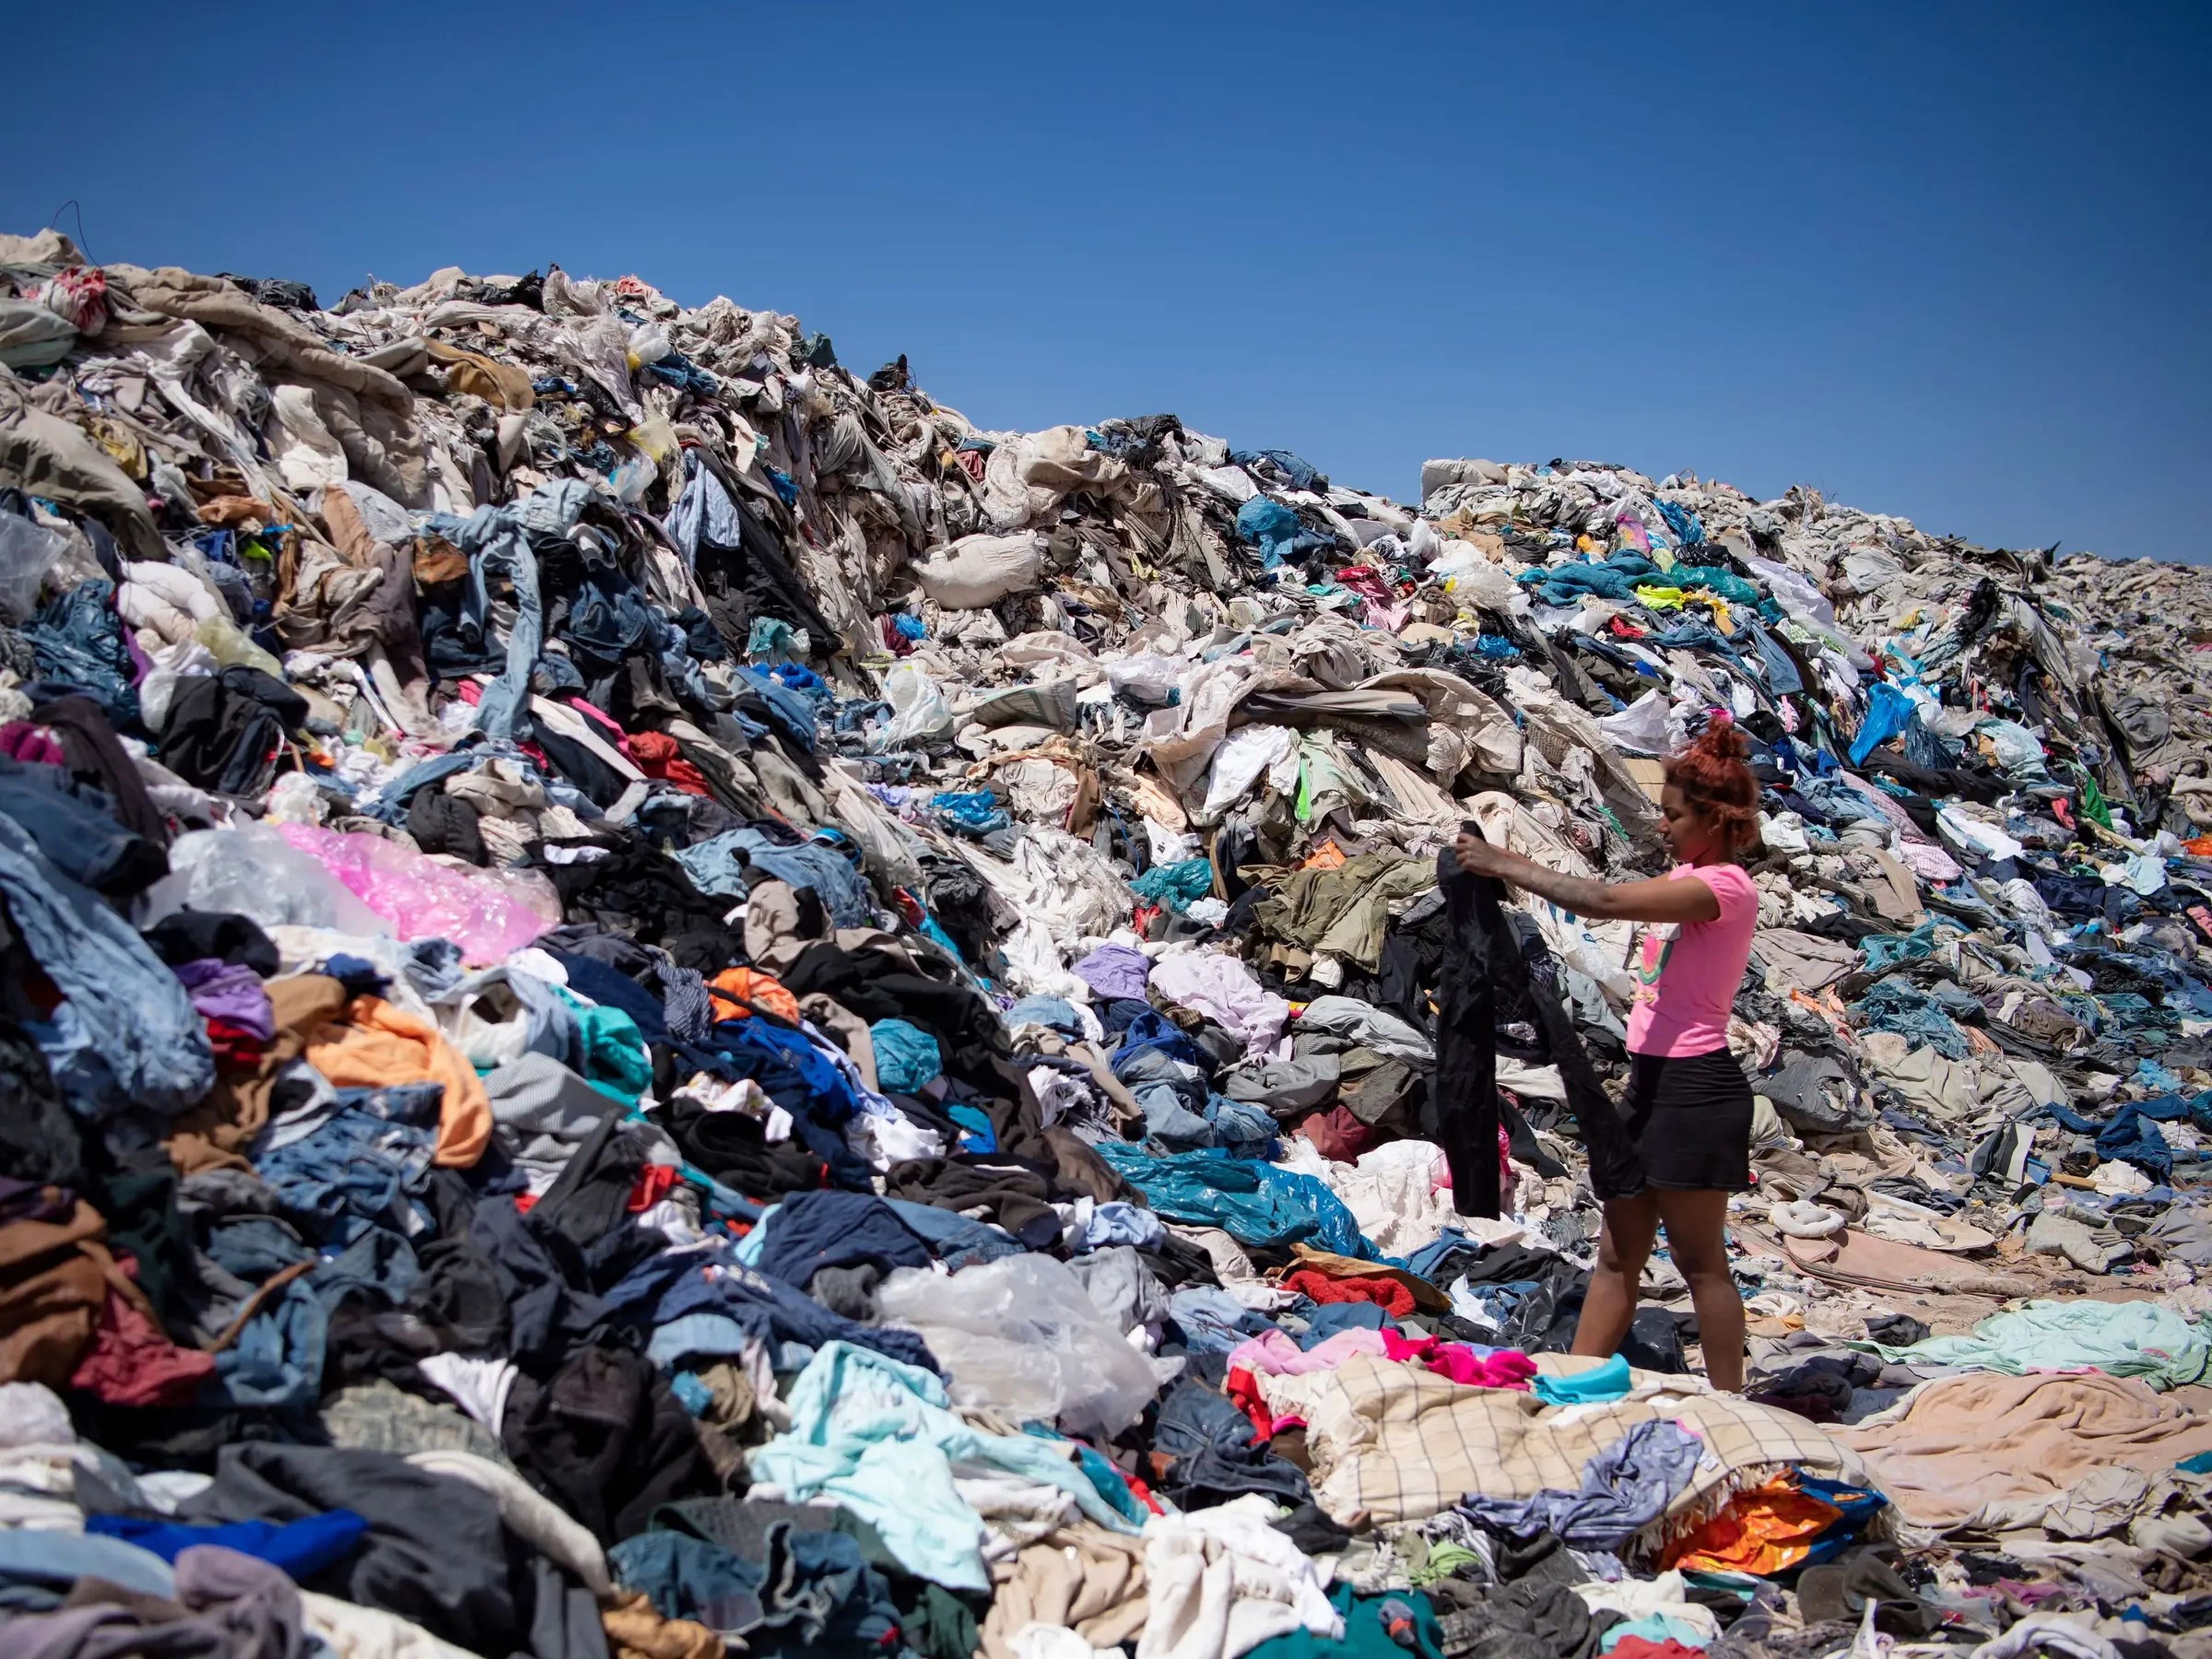 Pantalones preámbulo idea Así es el 'cementerio' de ropa sin vender en pleno desierto de Chile |  Business Insider España